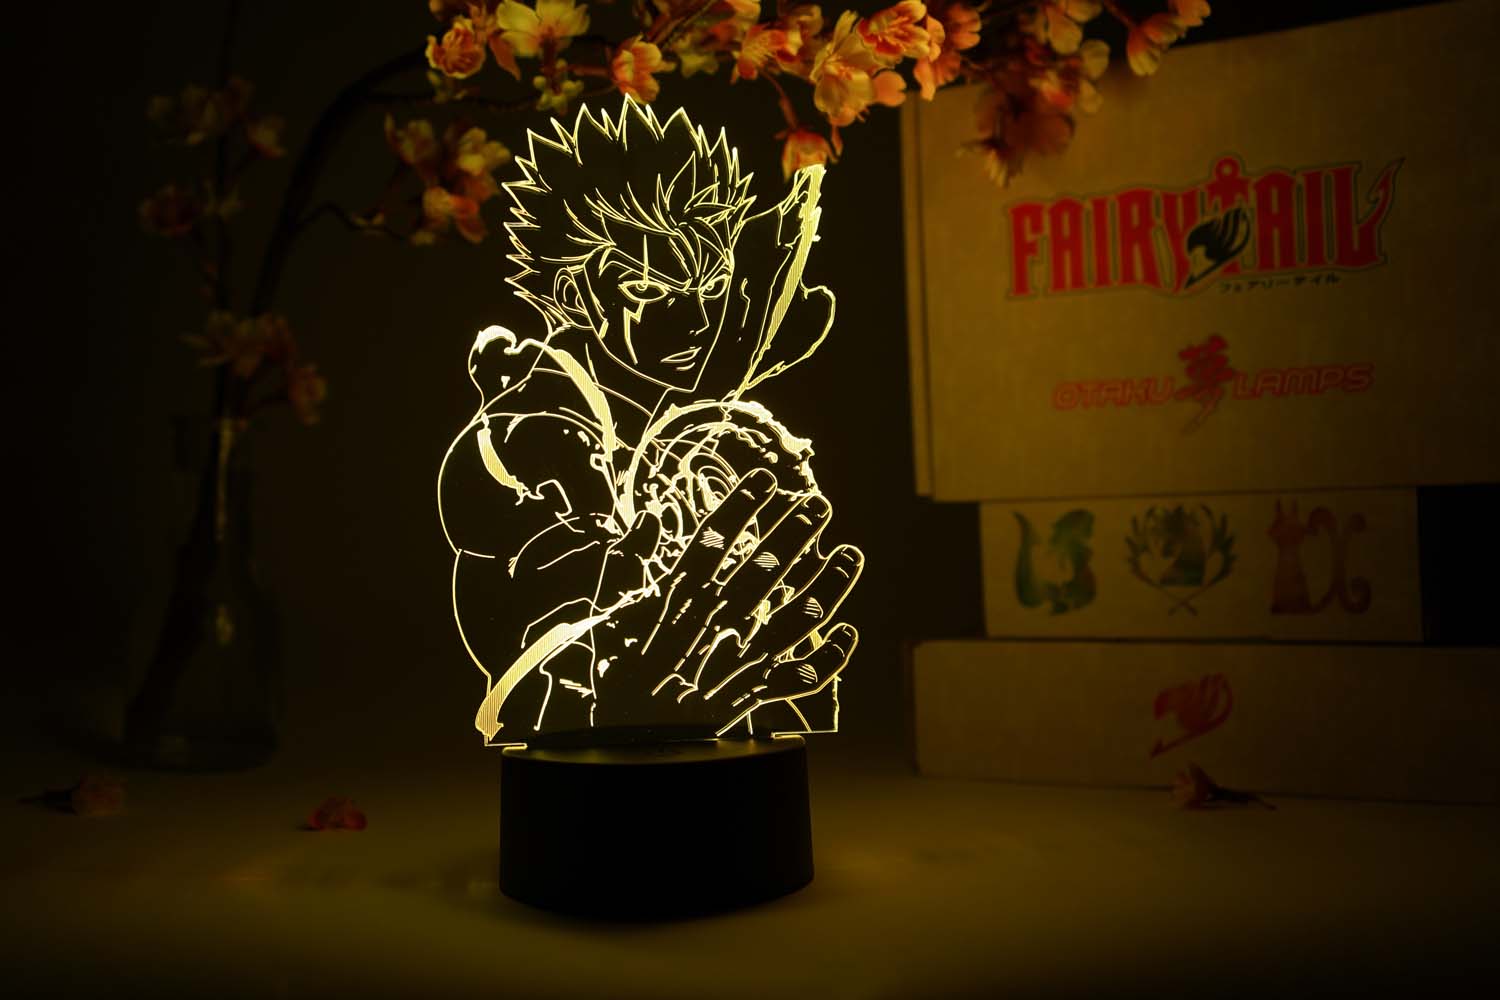 Laxus Dreyar Otaku Lamp (Fairy Tail)